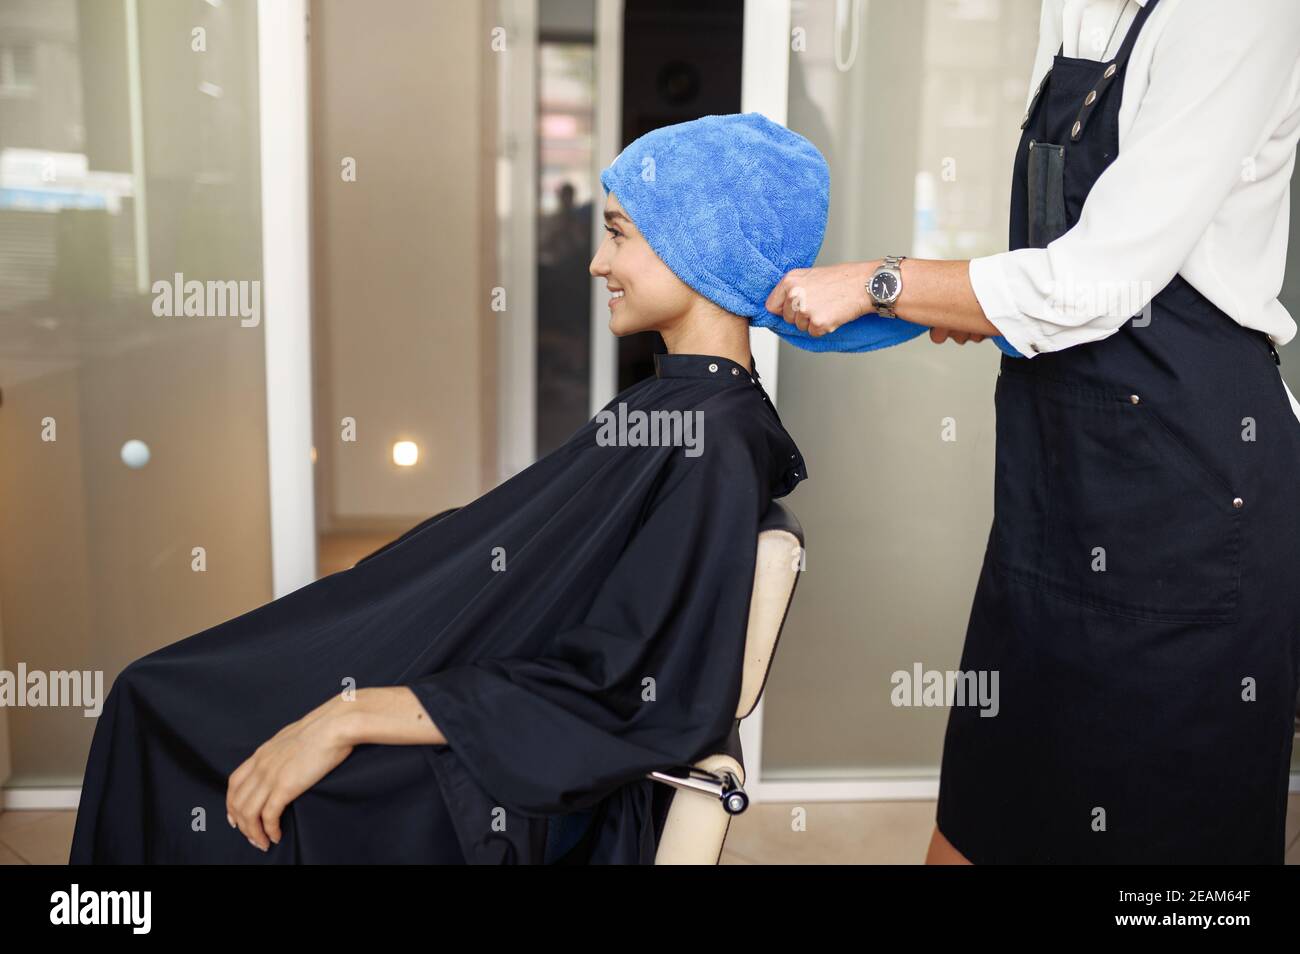 Coiffeur met une serviette sur les cheveux de la femme, salon de coiffure Banque D'Images